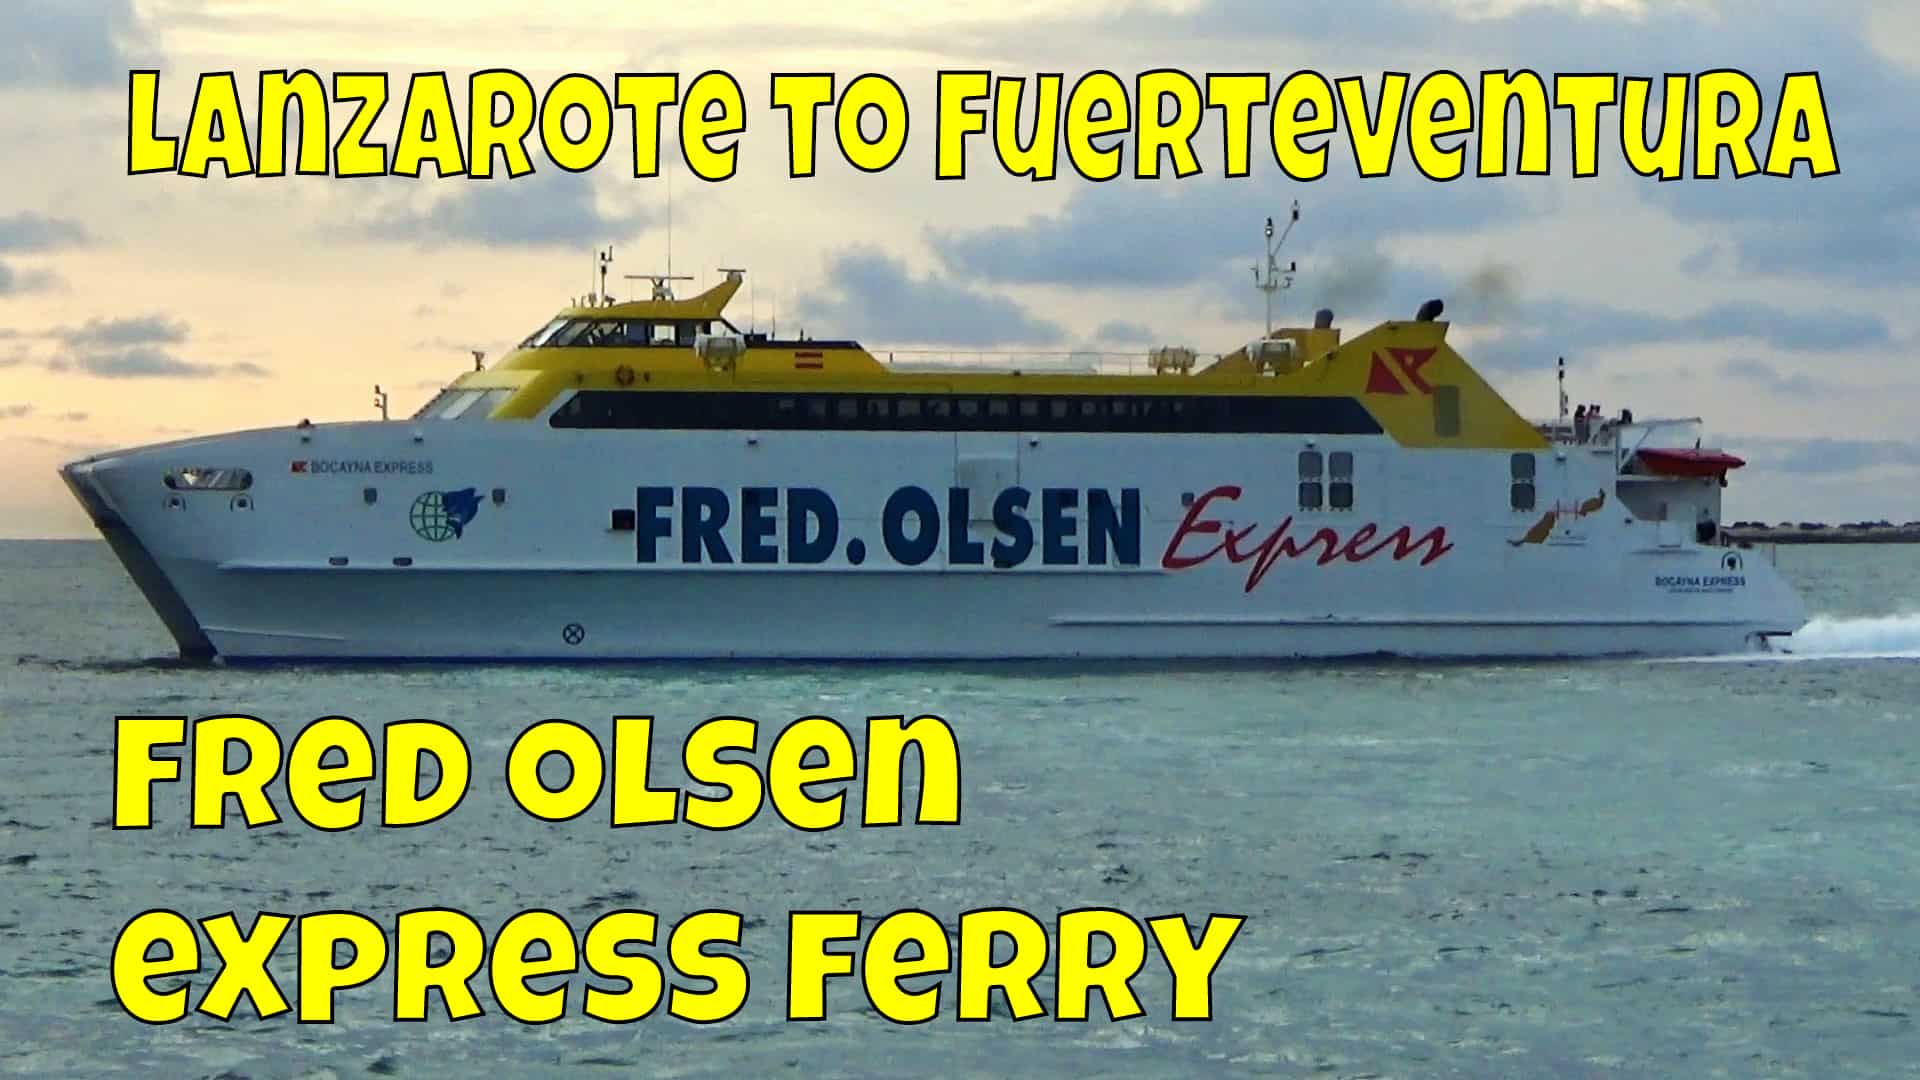 Lanzarote Fuerteventura Ferry – Fred Olsen Express Ferry